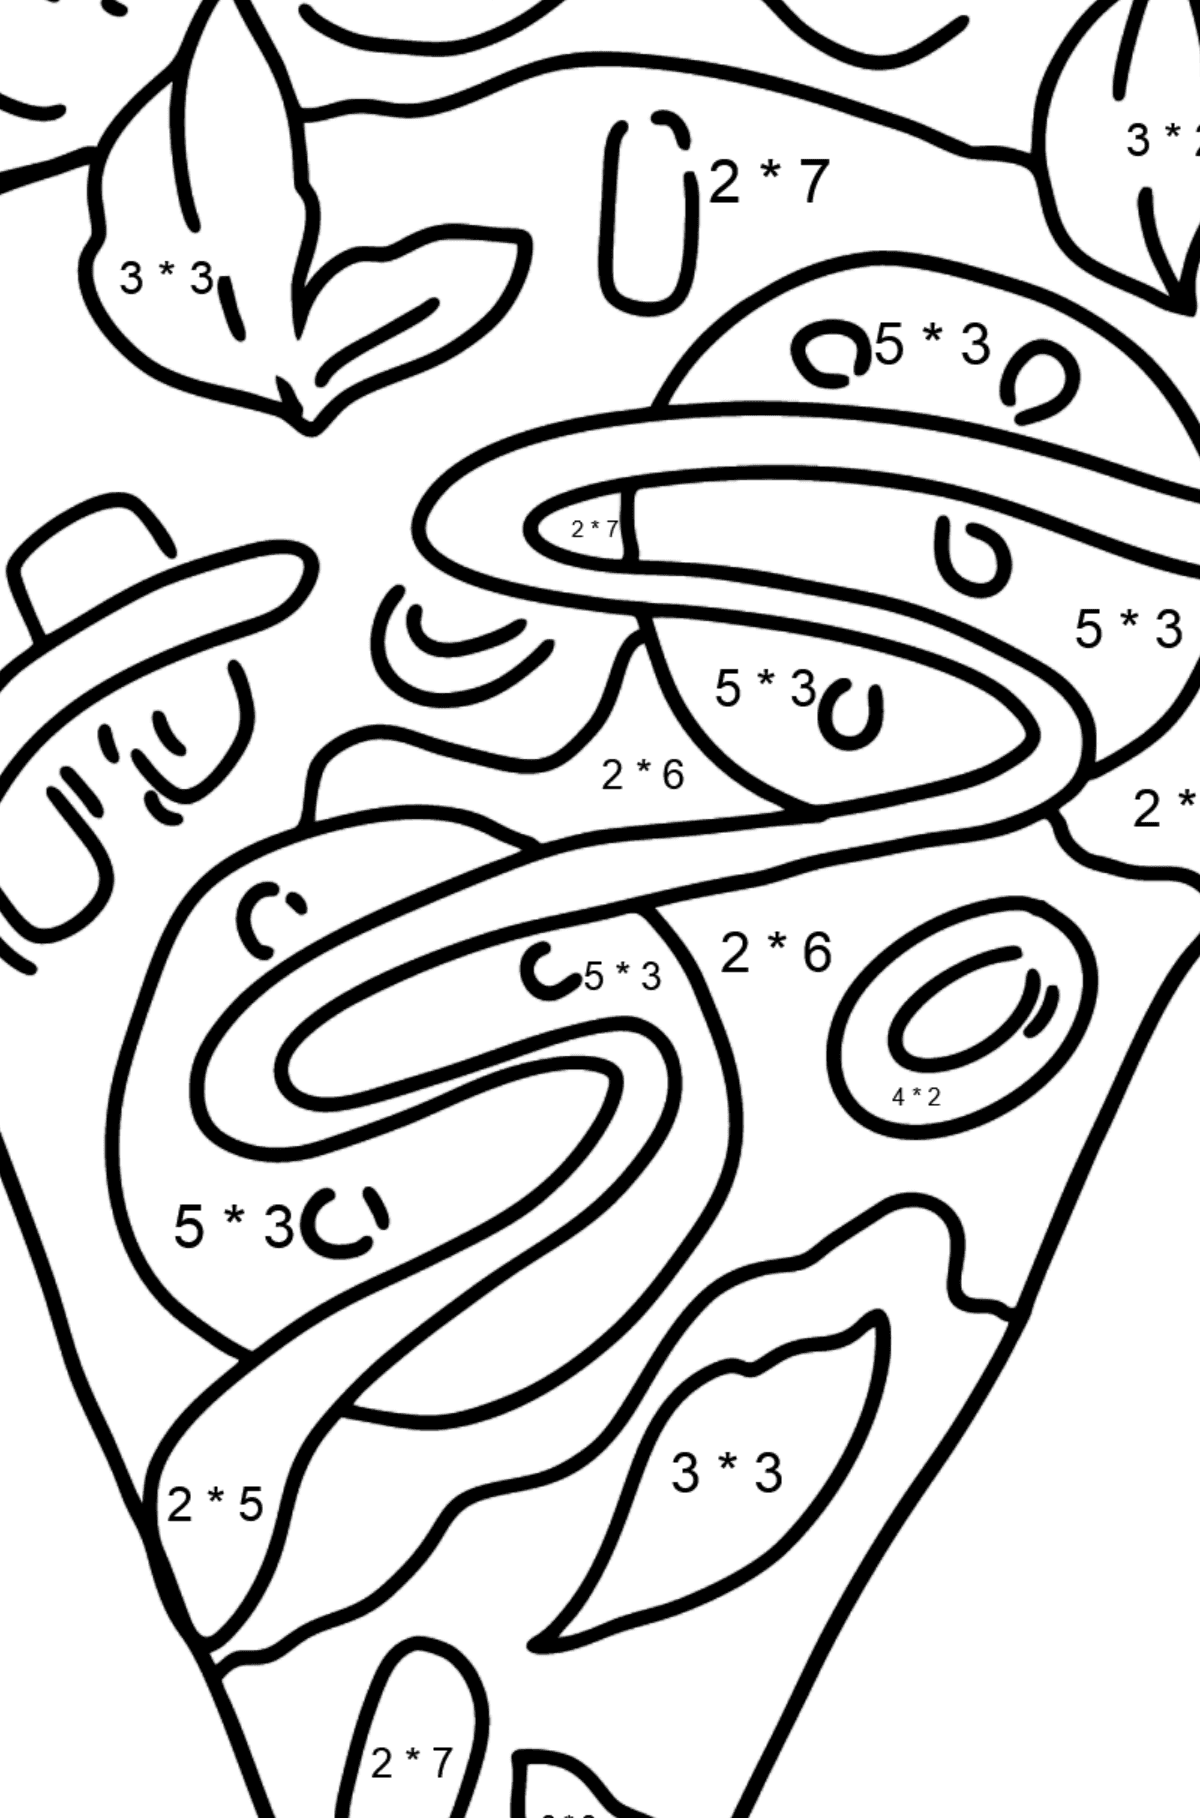 Розмальовка Піца з салямі - Математична Розмальовка Множення для дітей